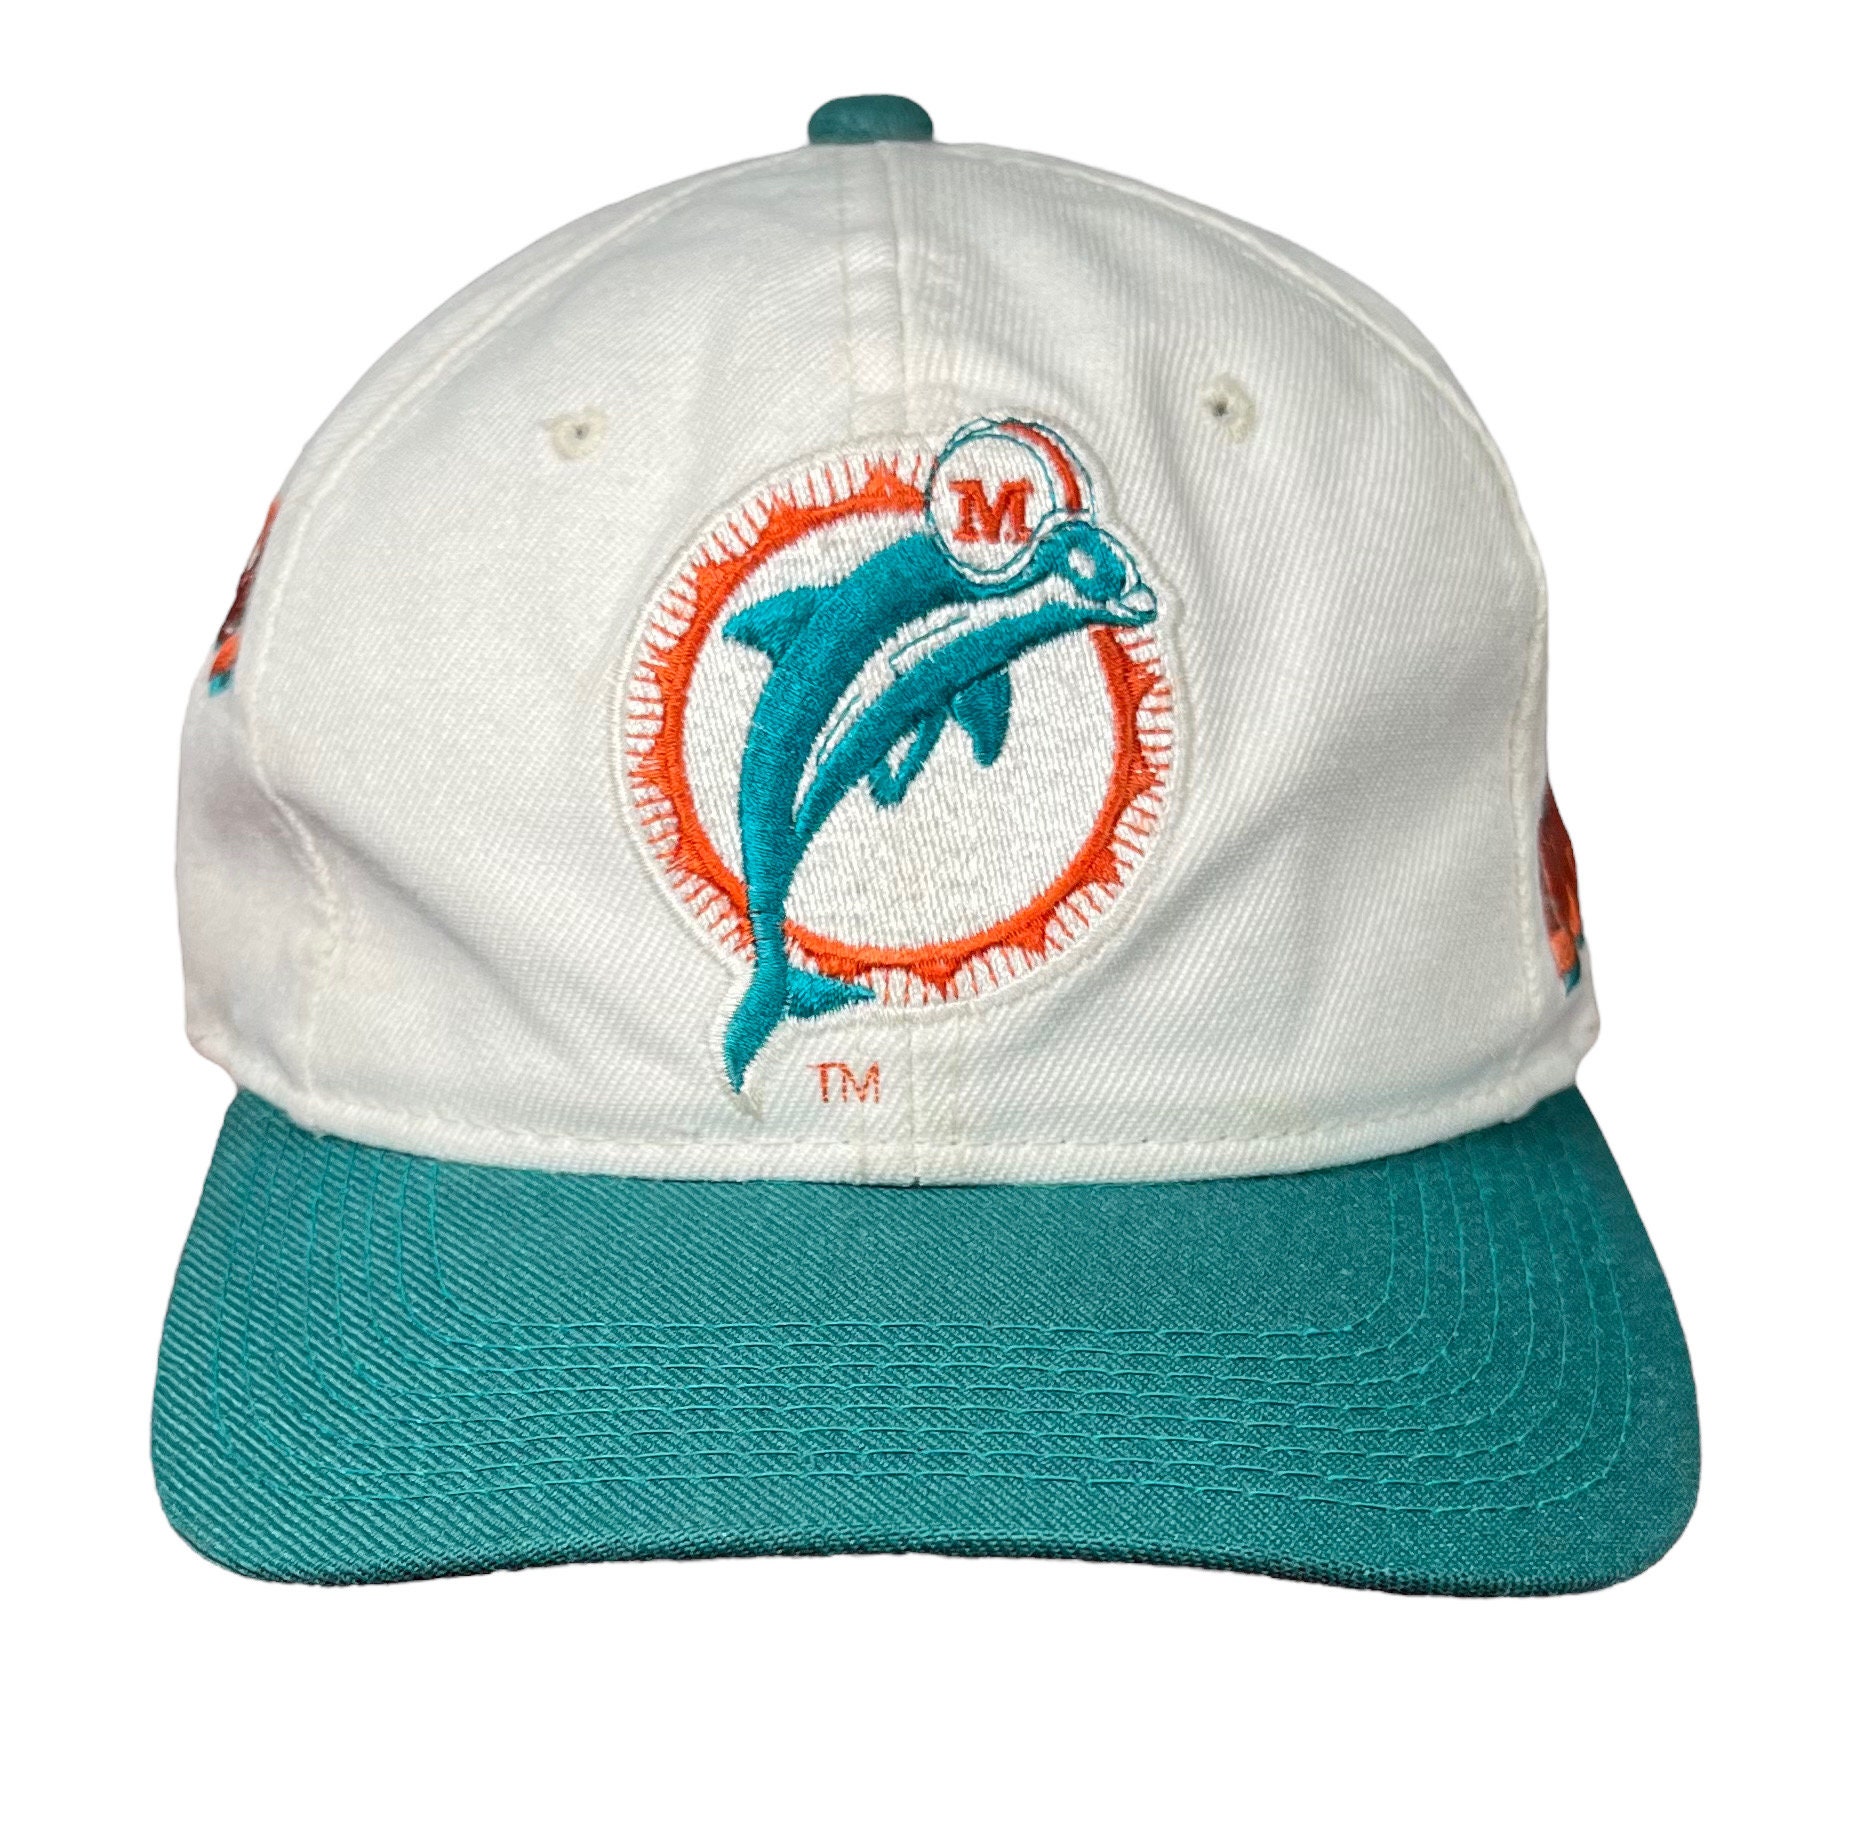 Dolphins Vintage Cap Hot Sale, SAVE 59% 